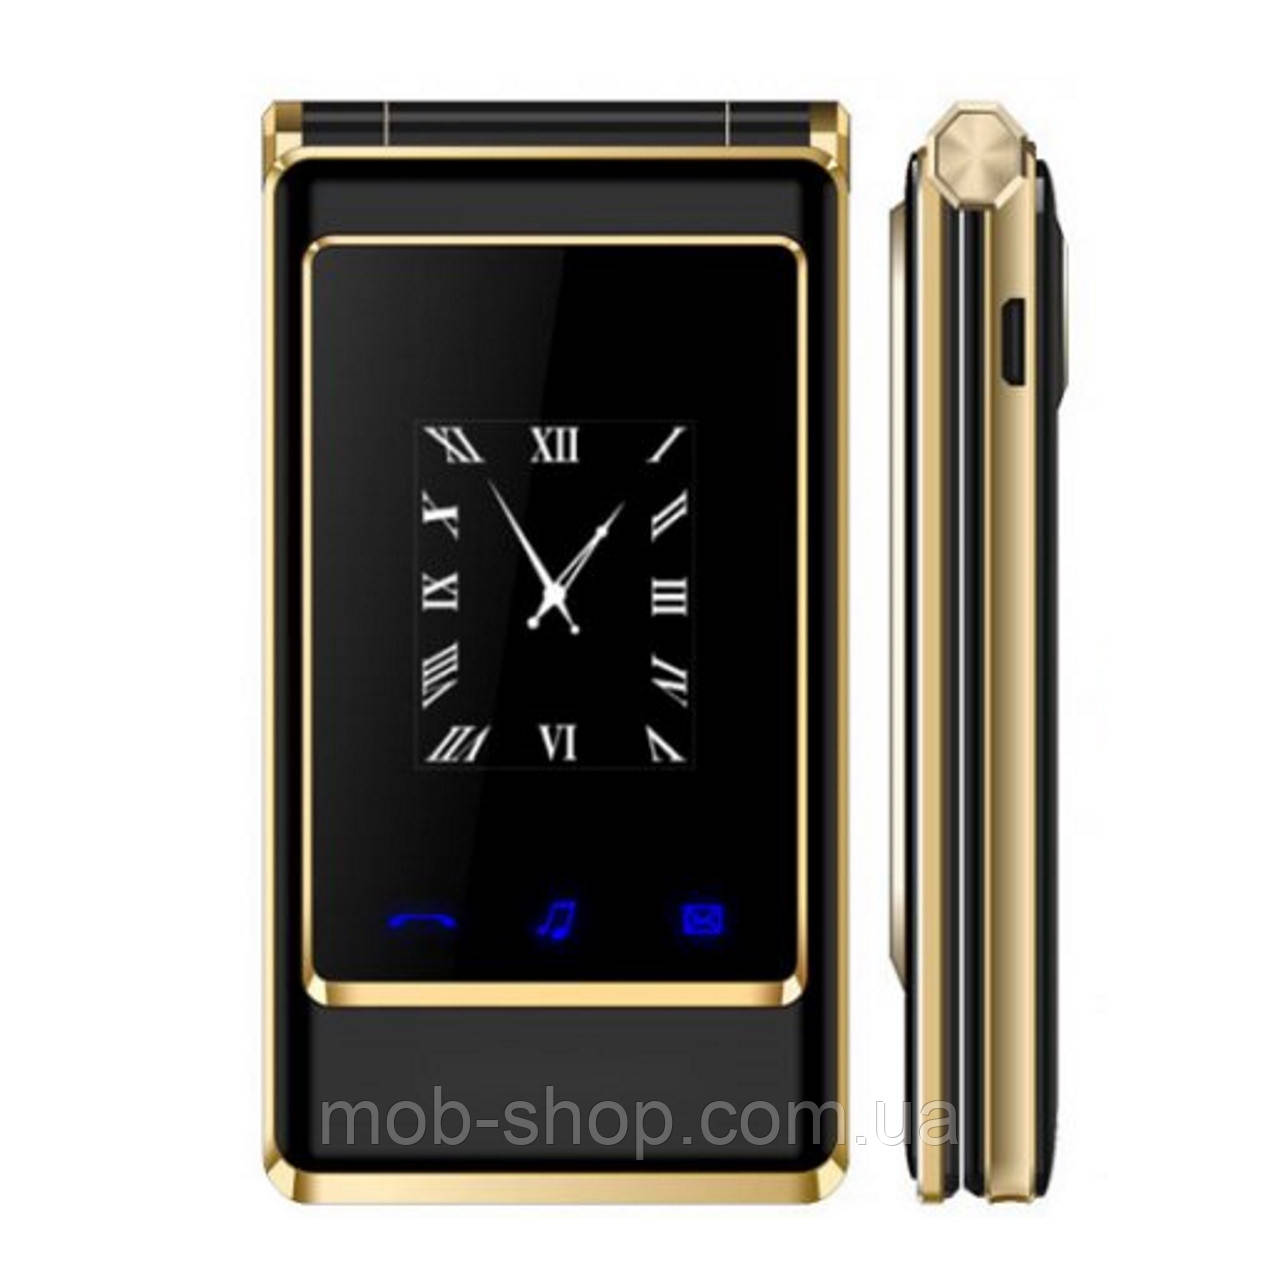 Мобільний телефон Tkexun A15 (Satrend A15) black. Flip кнопкова розкладачка з великими кнопками